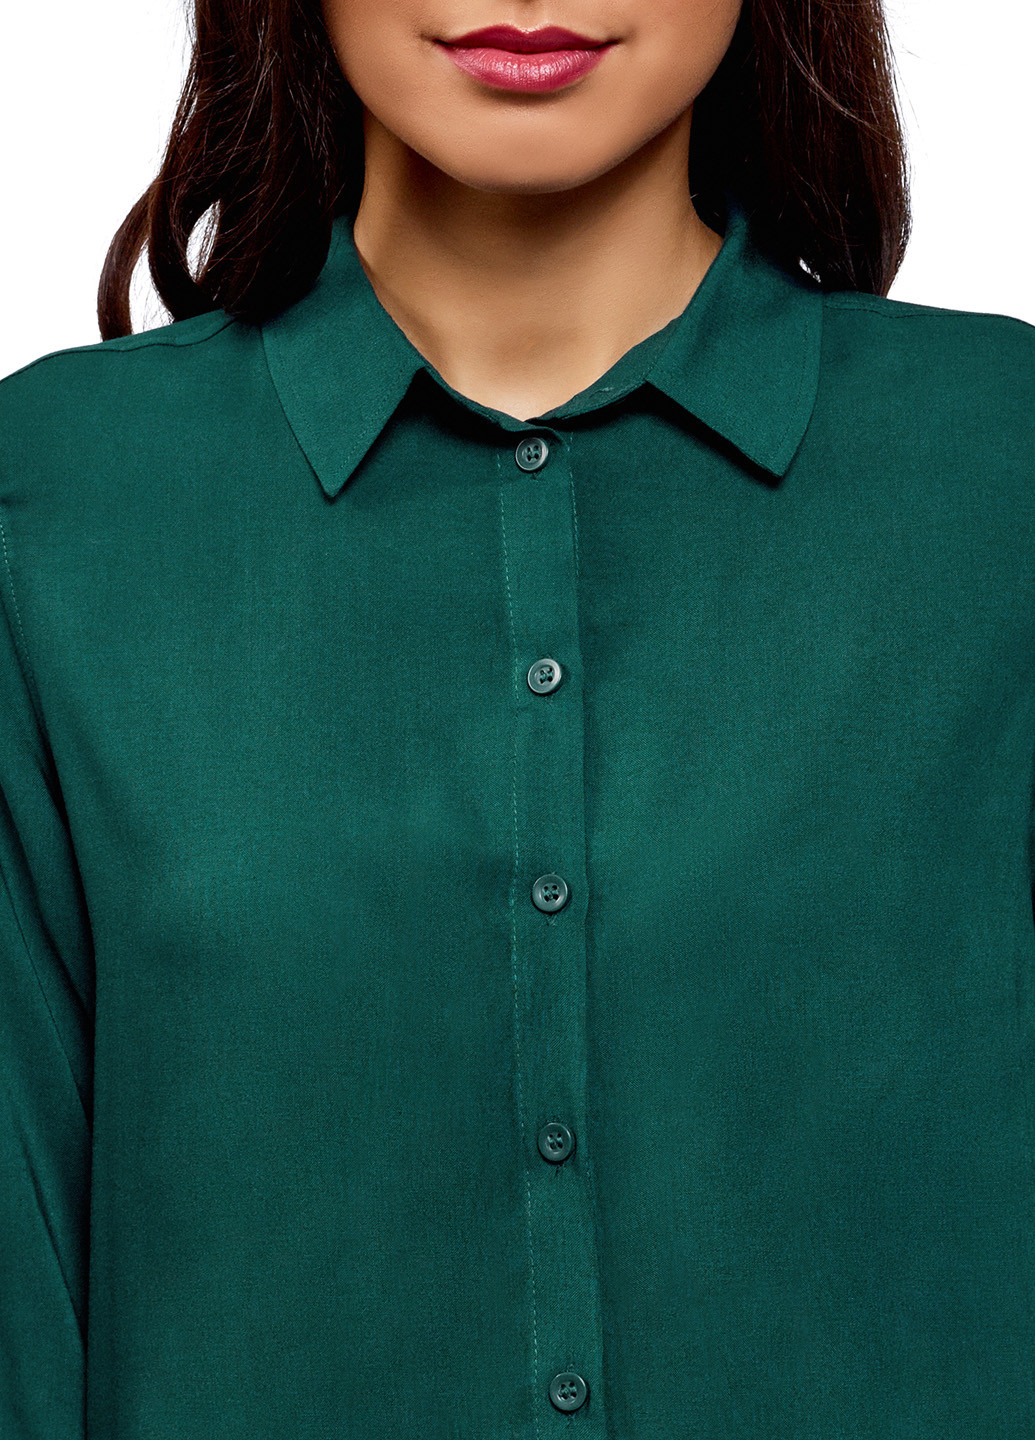 Темно-зеленая демисезонная блуза Oodji